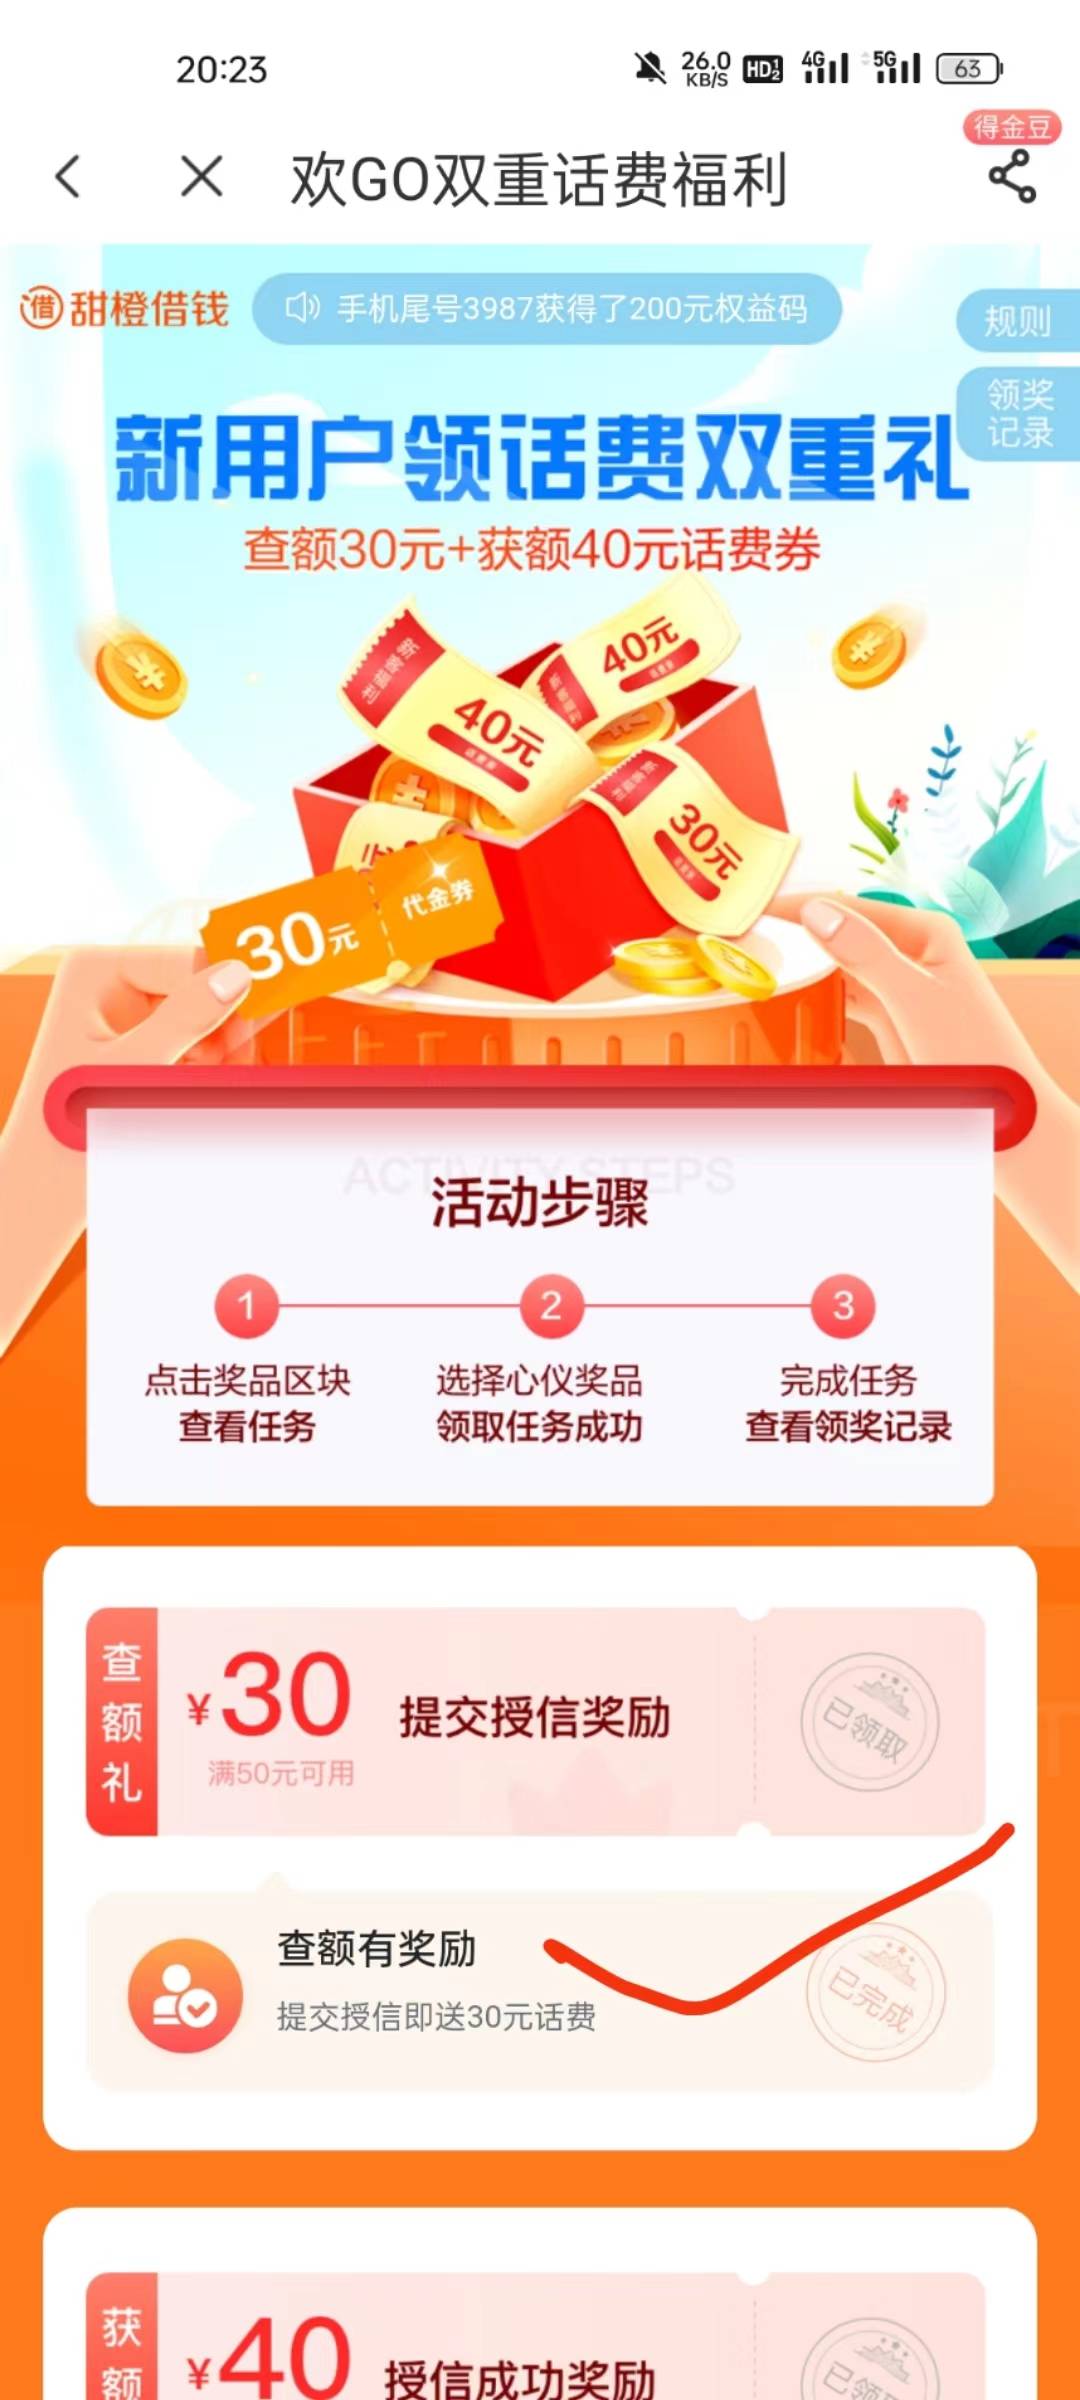 中国电信app欢GO双重话费福利活动
​查额度就有，基本人人有，
移动联通电信号码都可32 / 作者:A仙仙仙 / 